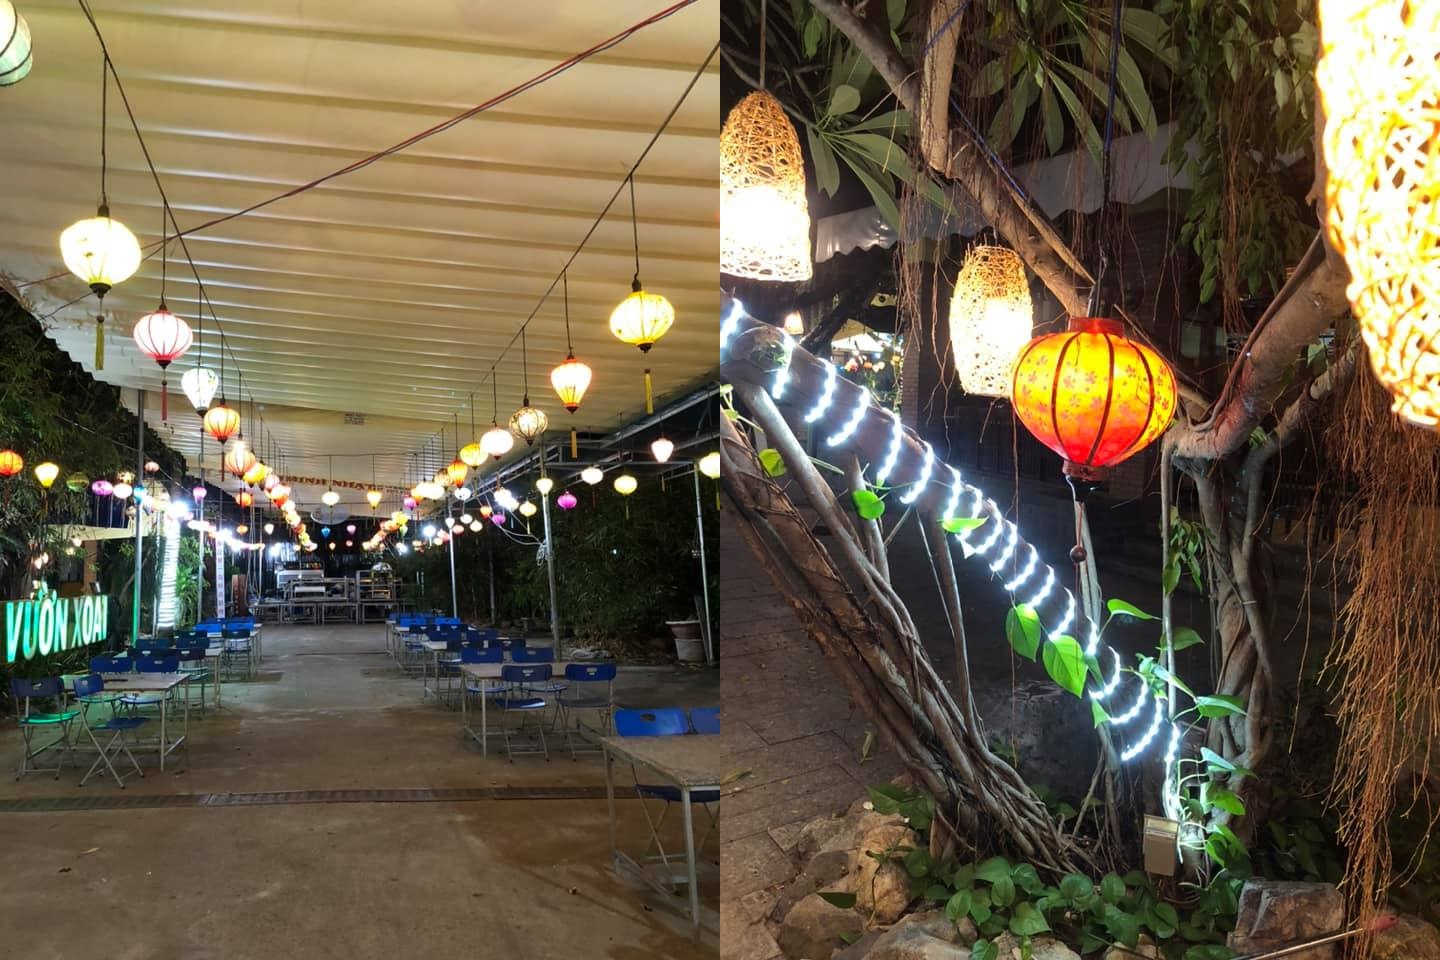 Nhà hàng Vườn Xoài Nha Trang - Xinh xắn không gian sân vườn, đậm đà hương vị Việt Nam 9